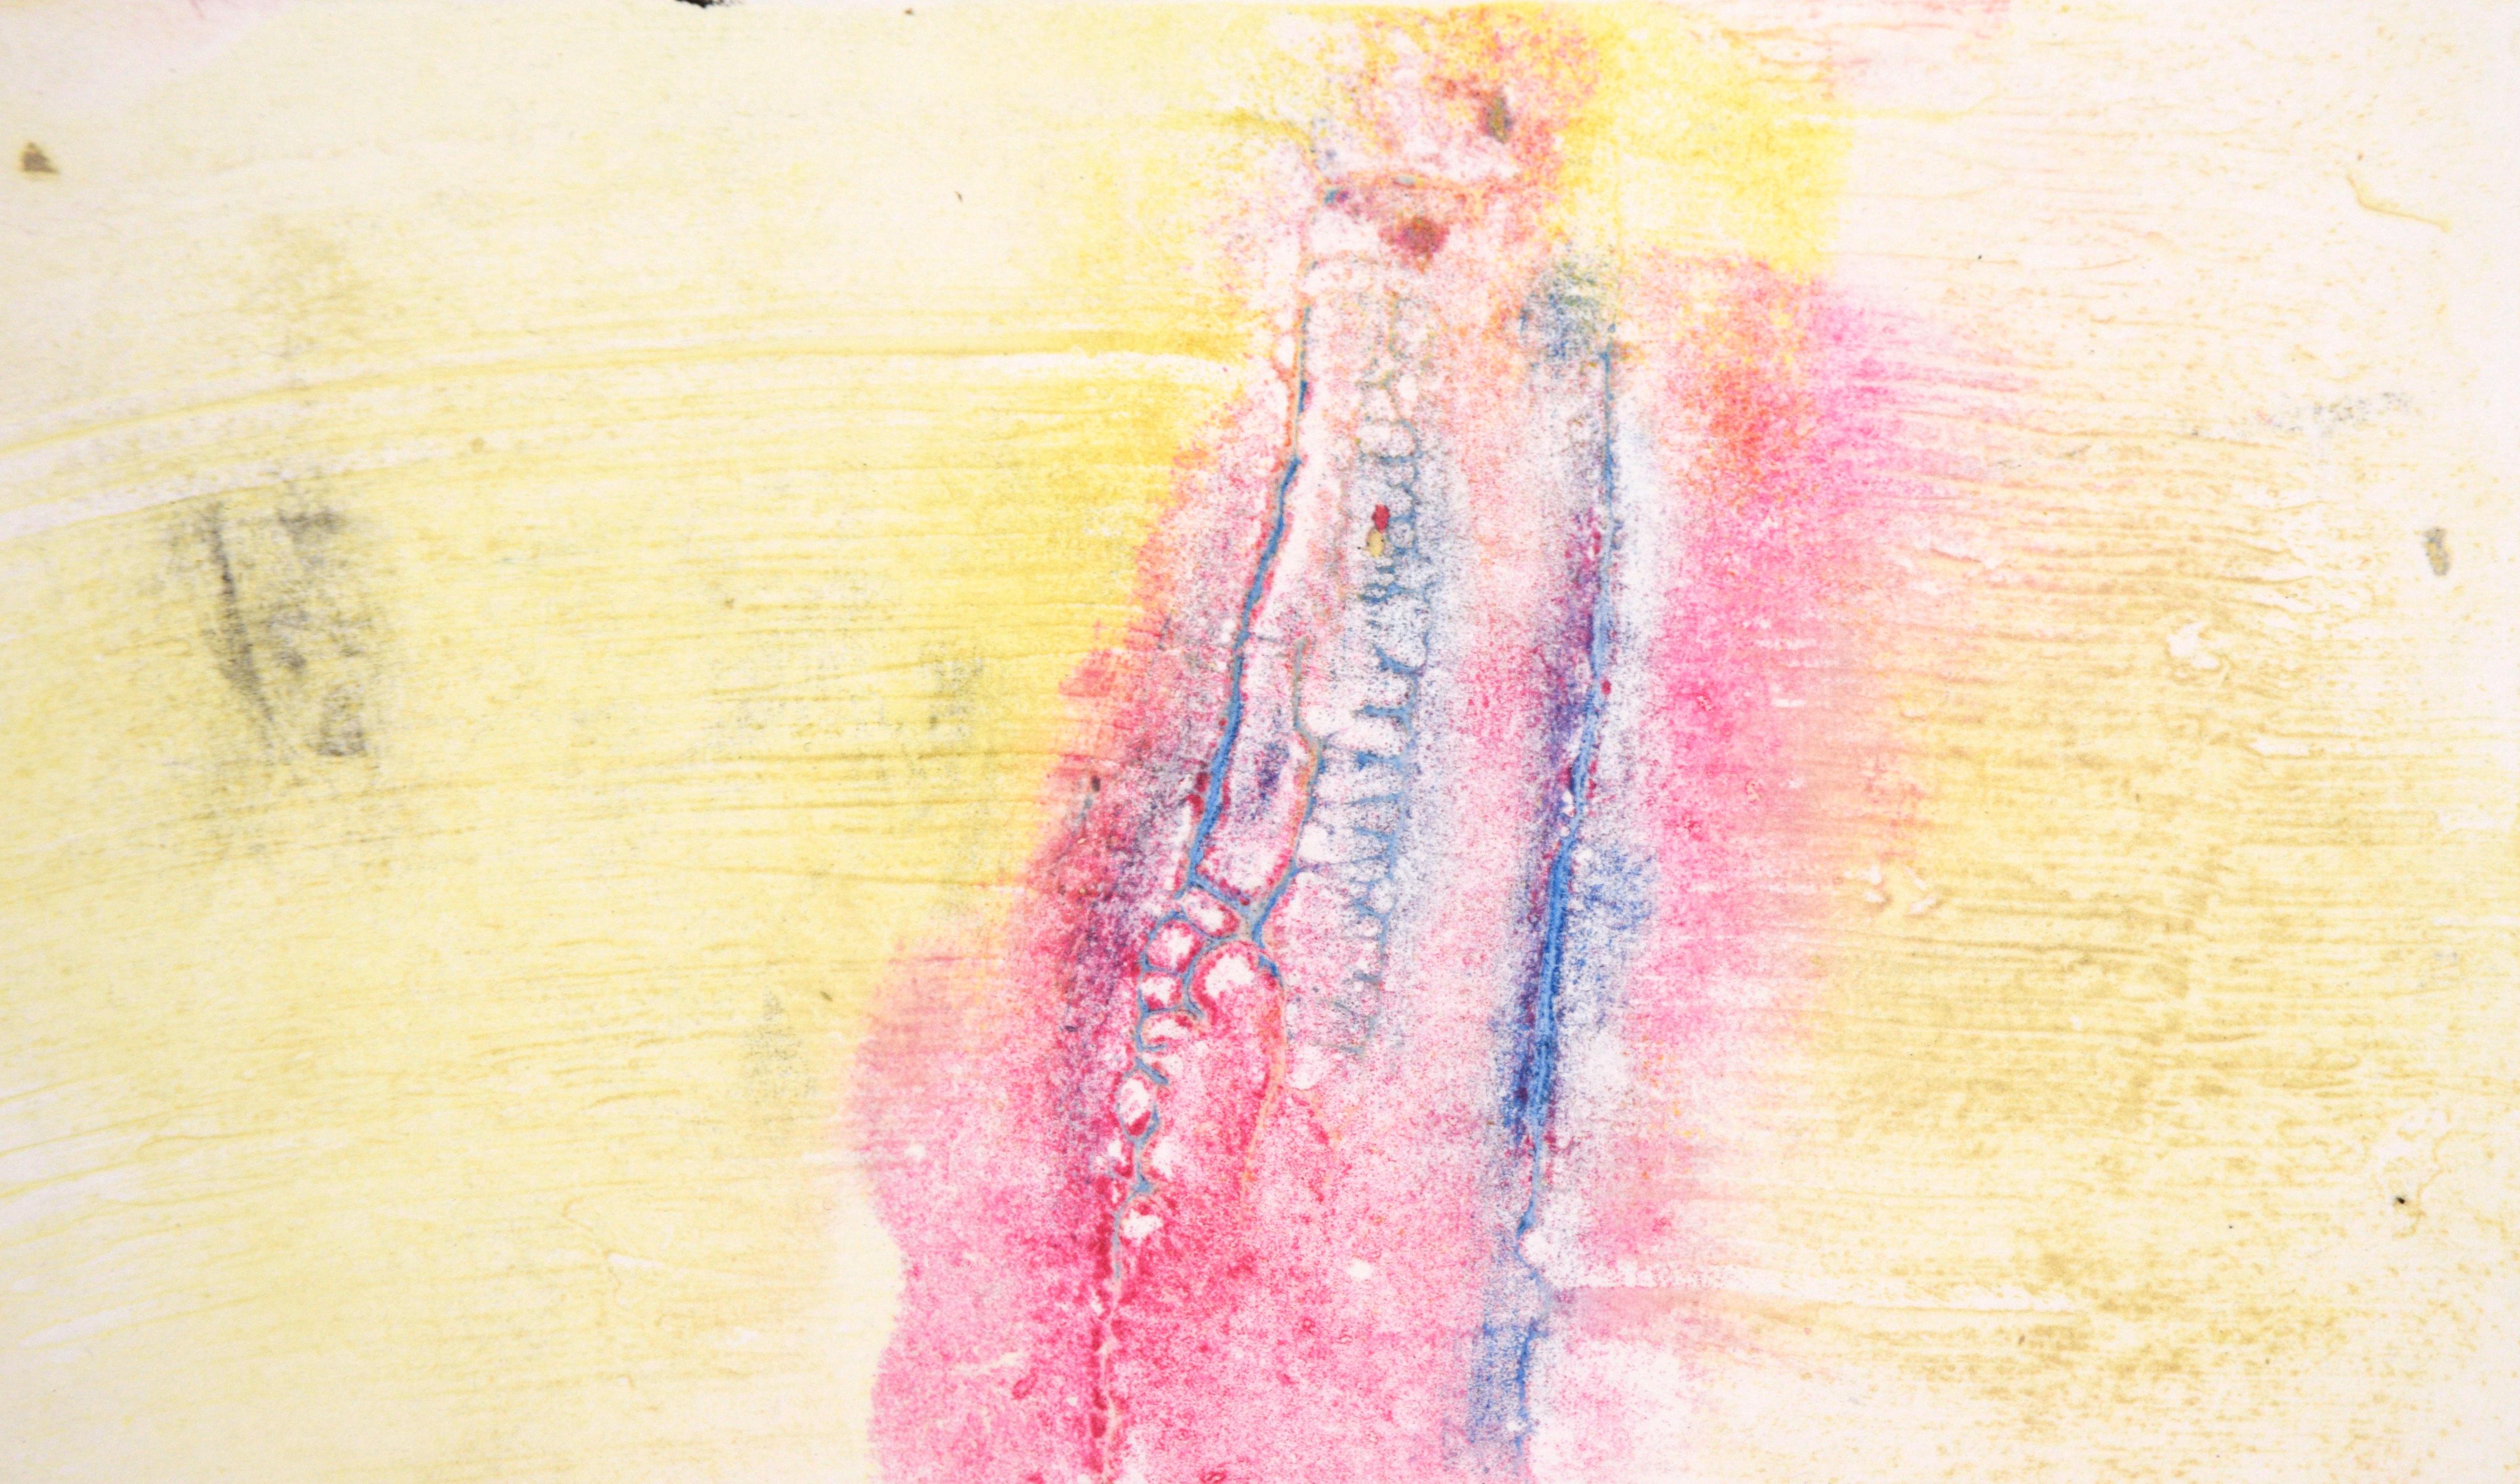 Blau und Rosa auf Gelb - Texturierte Transfermonotypie in Öl auf Papier

Original handgemalte und übertragene Monotypie der kalifornischen Künstlerin Heather Speck (Amerikanerin, 20. Jh.). Rosa und blaue Texturen heben sich von einem gelben